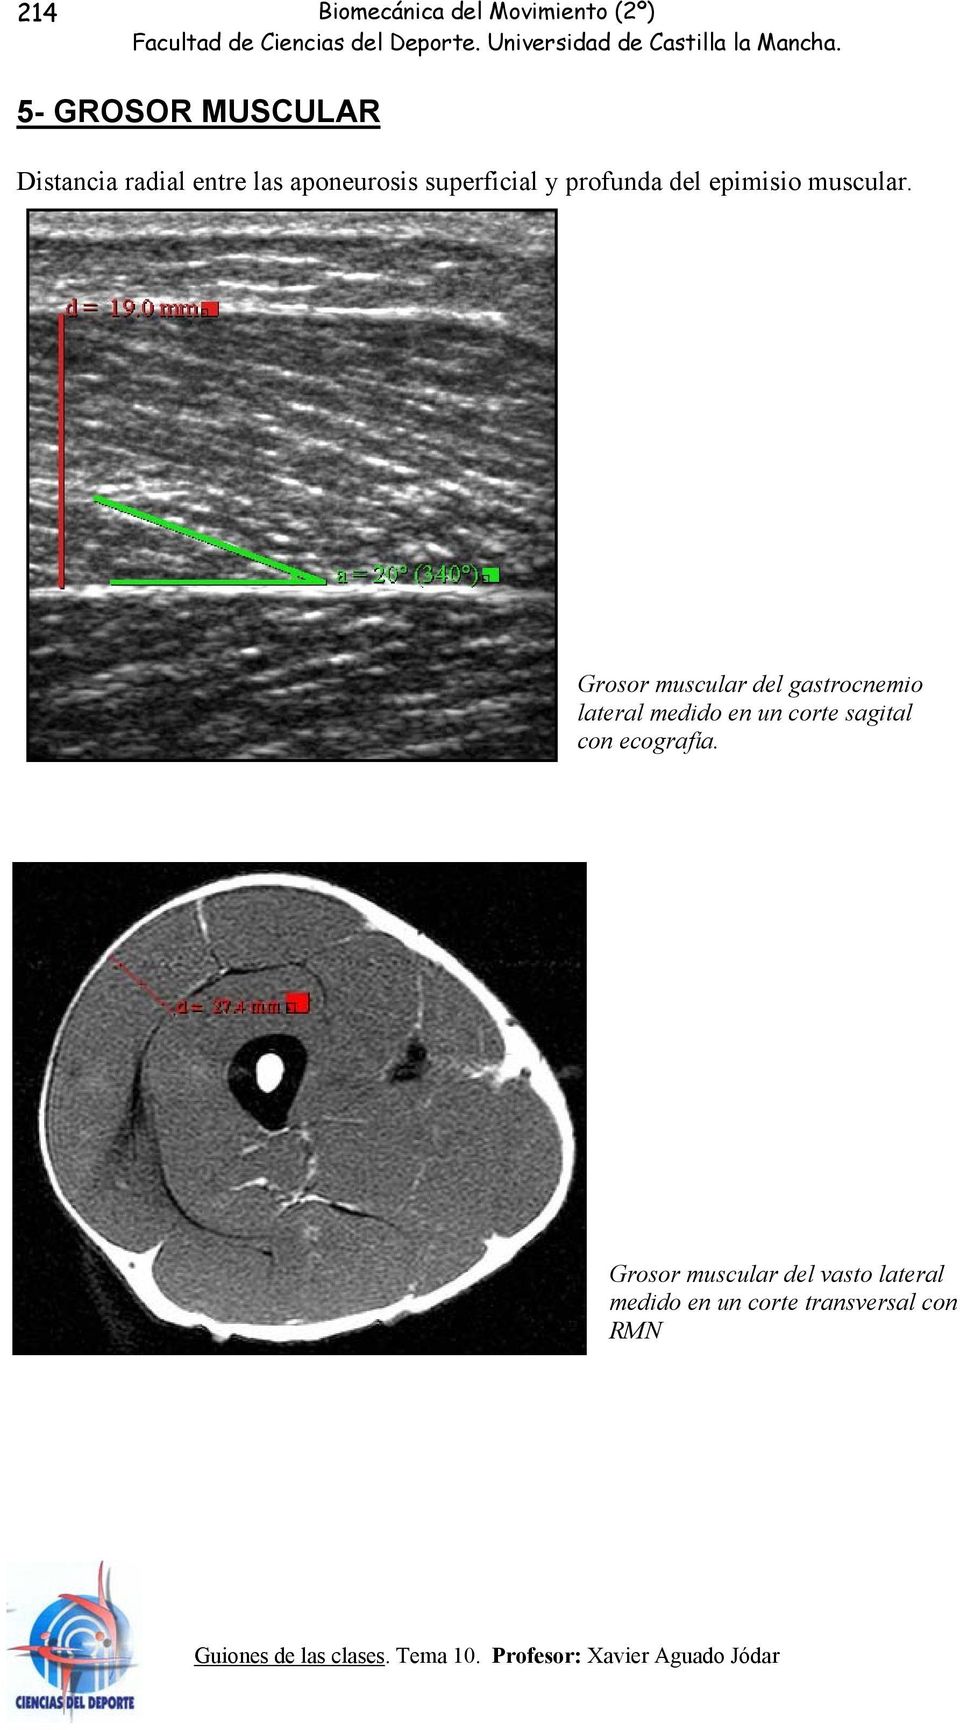 Grosor muscular del gastrocnemio lateral medido en un corte sagital con